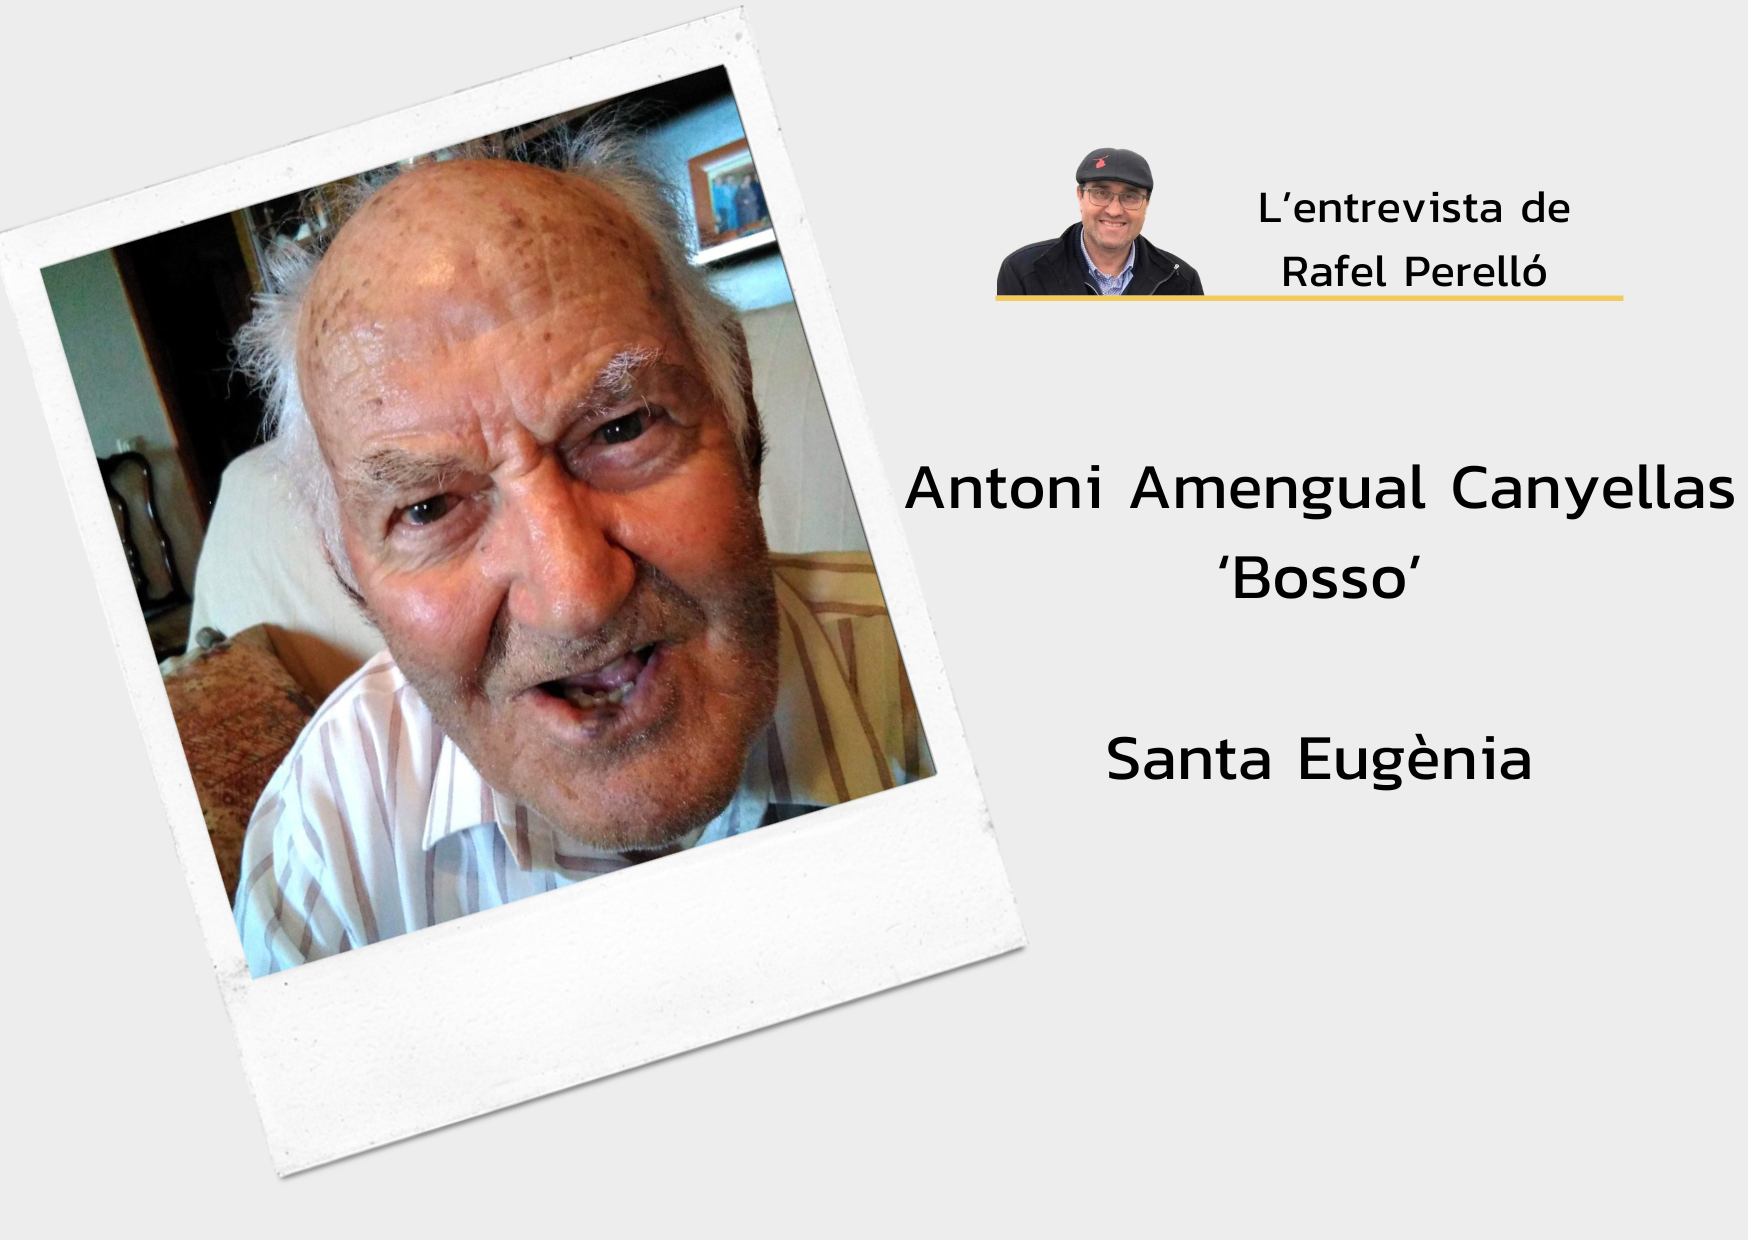 Antoni Amengual Canyellas “Bosso”: “Llavors eren uns arriots! A Sencelles, els al·lots apedregaren el professor”